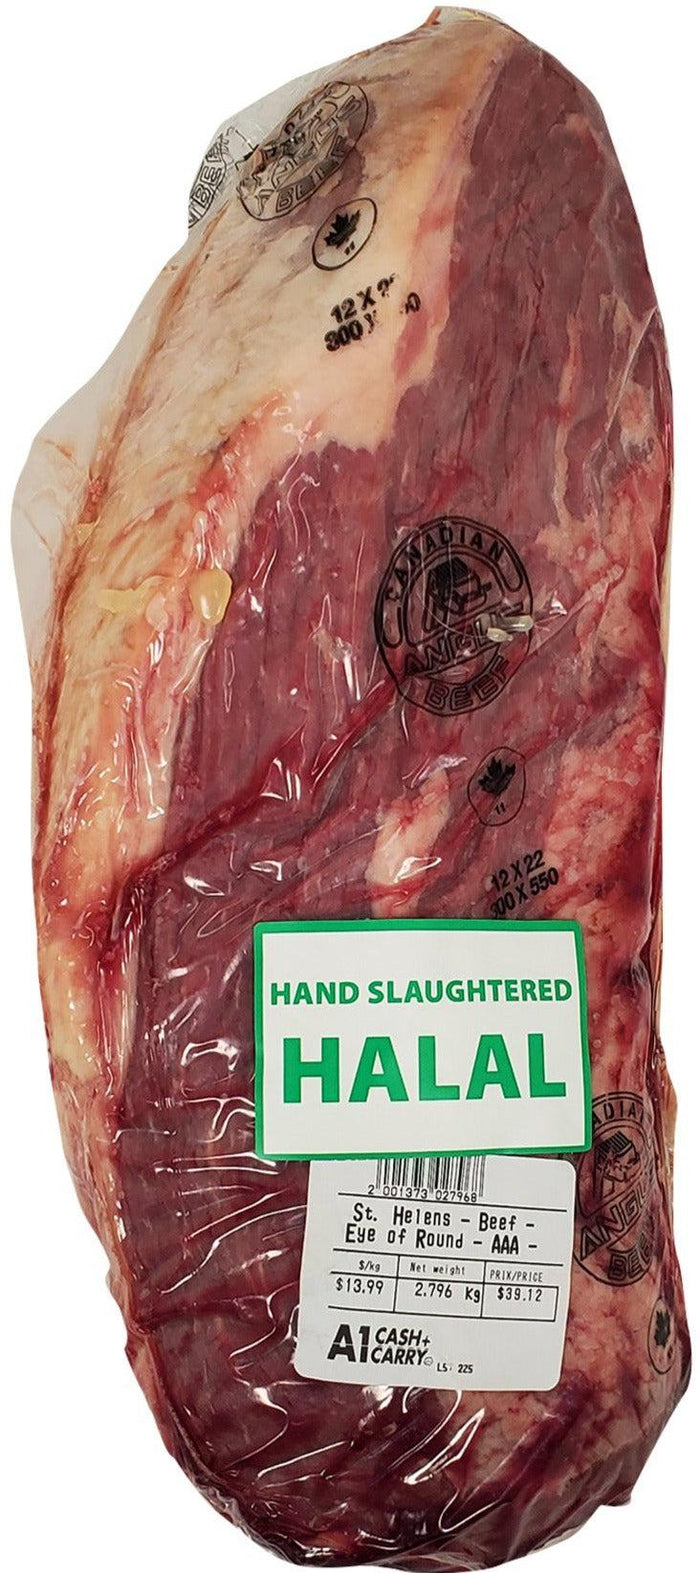 St. Helens Beef - Eye of Round - AAA - Halal